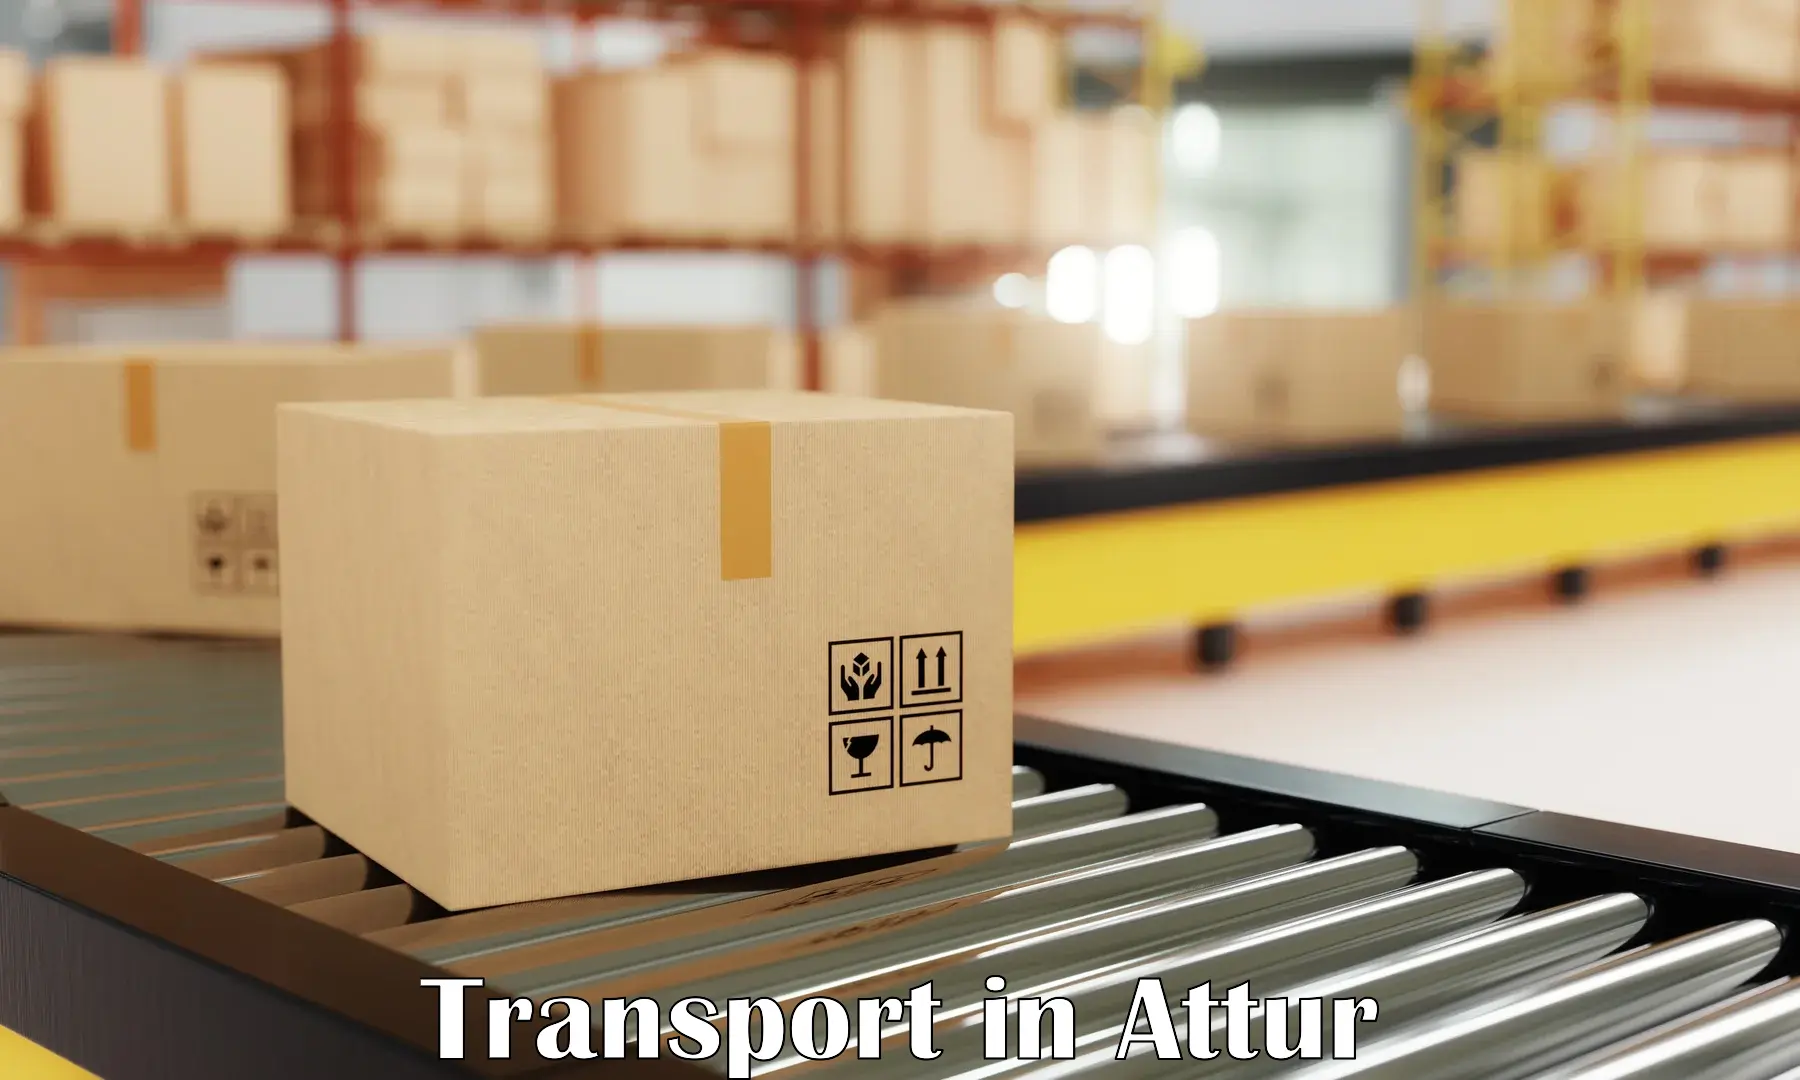 Transport in sharing in Attur